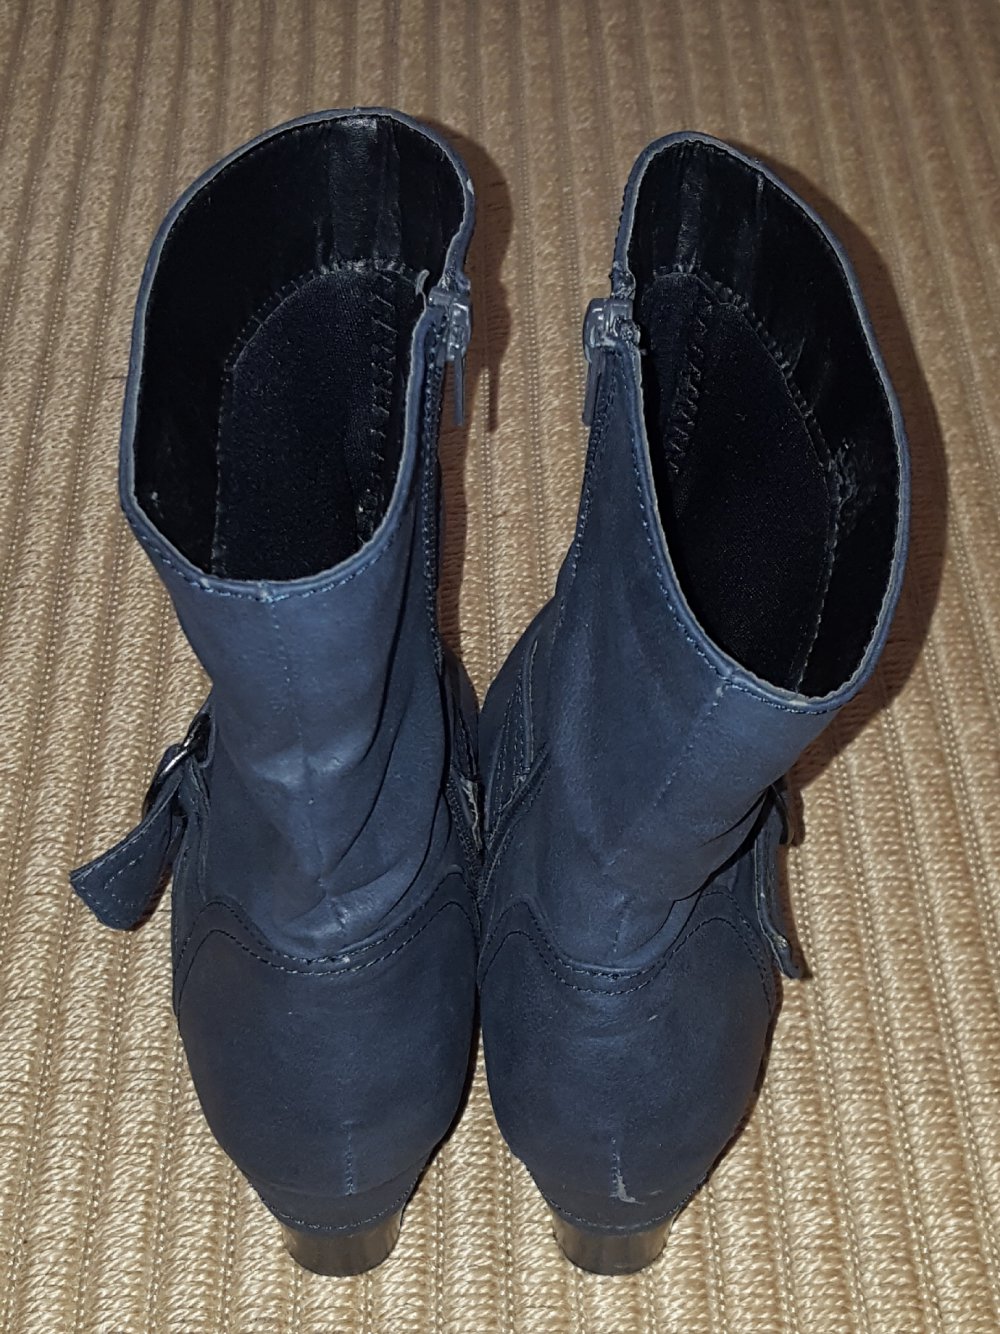 Kunstleder Stiefel Stiefeletten dunkelblau halbhoch Schnalle Gr 38 Street Shoes